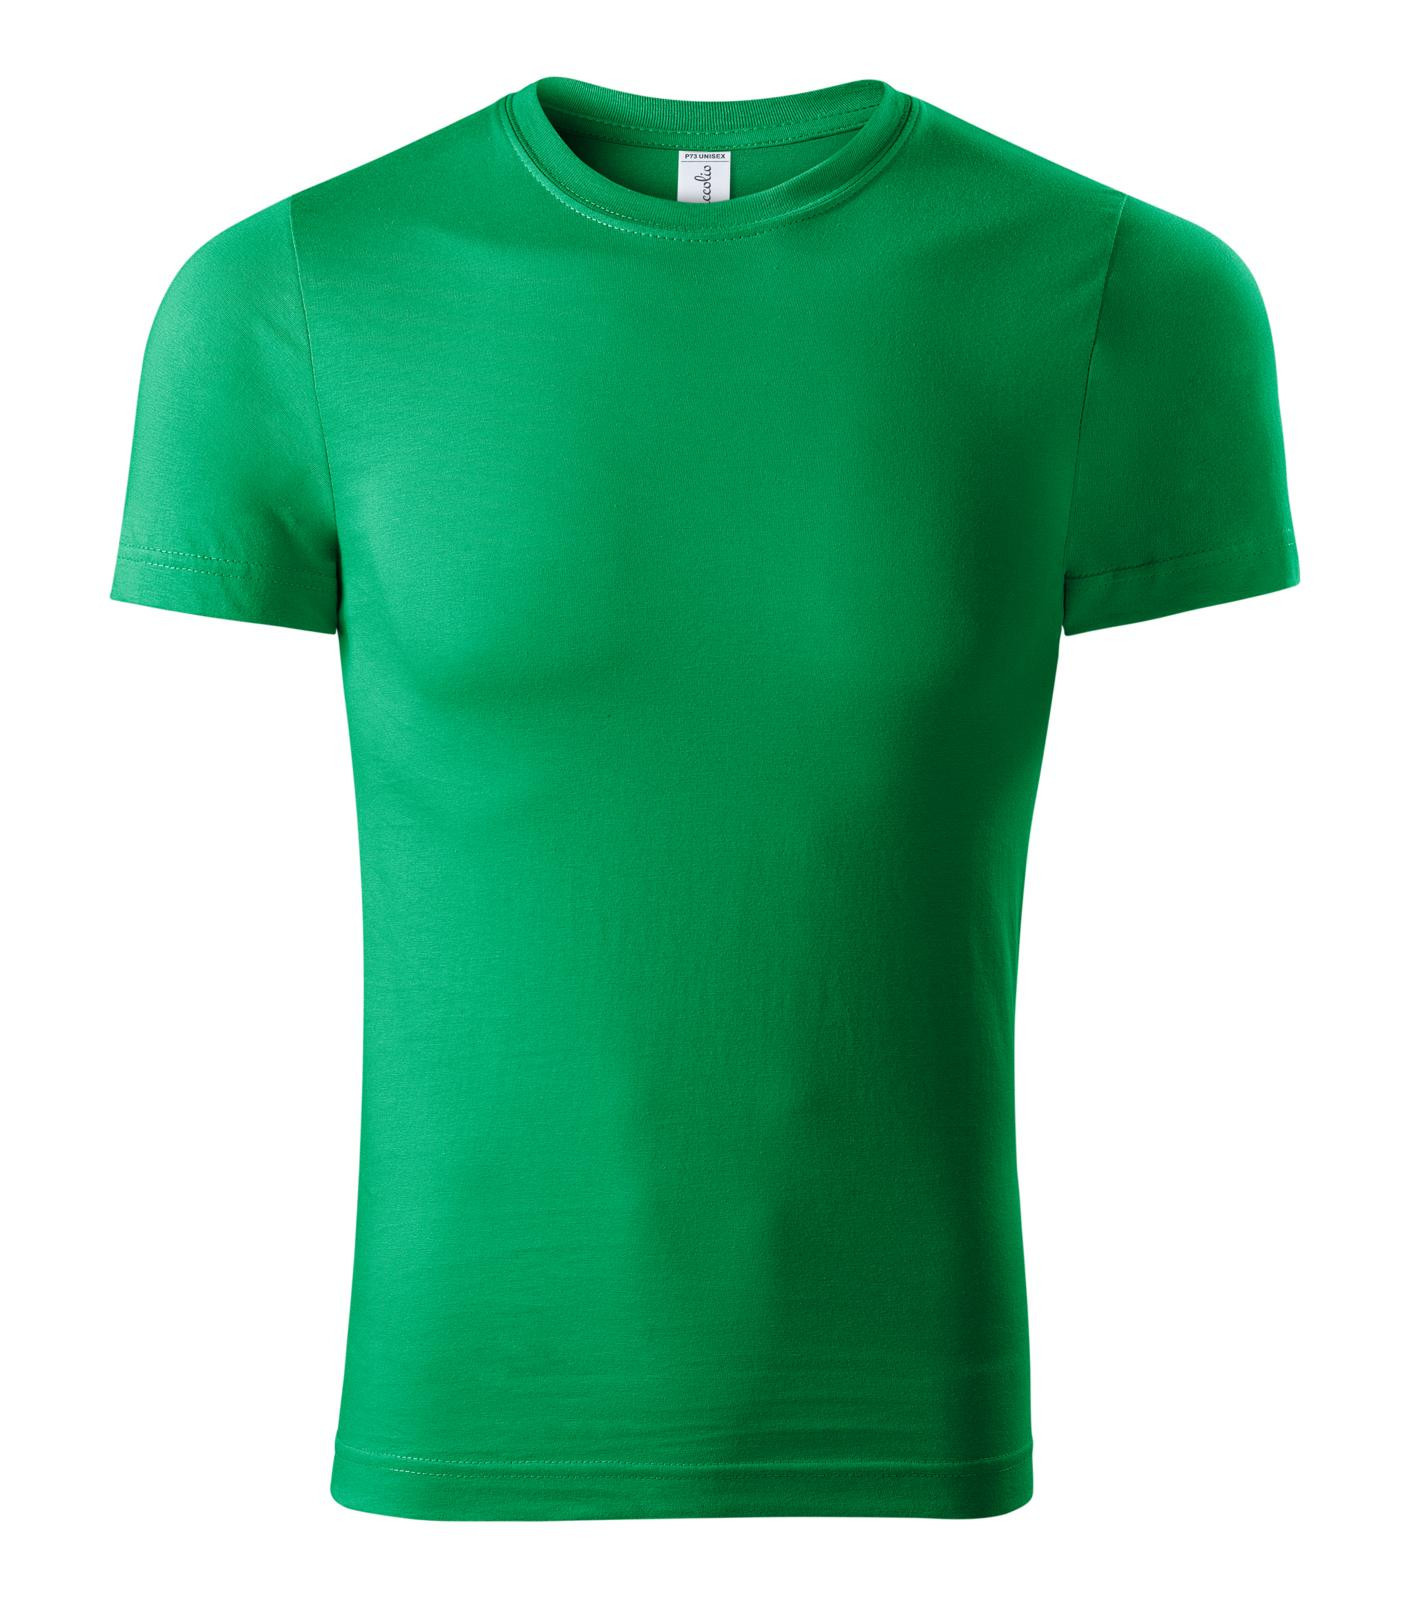 Unisex tričko Piccolio Paint P73 - veľkosť: XXL, farba: trávová zelená